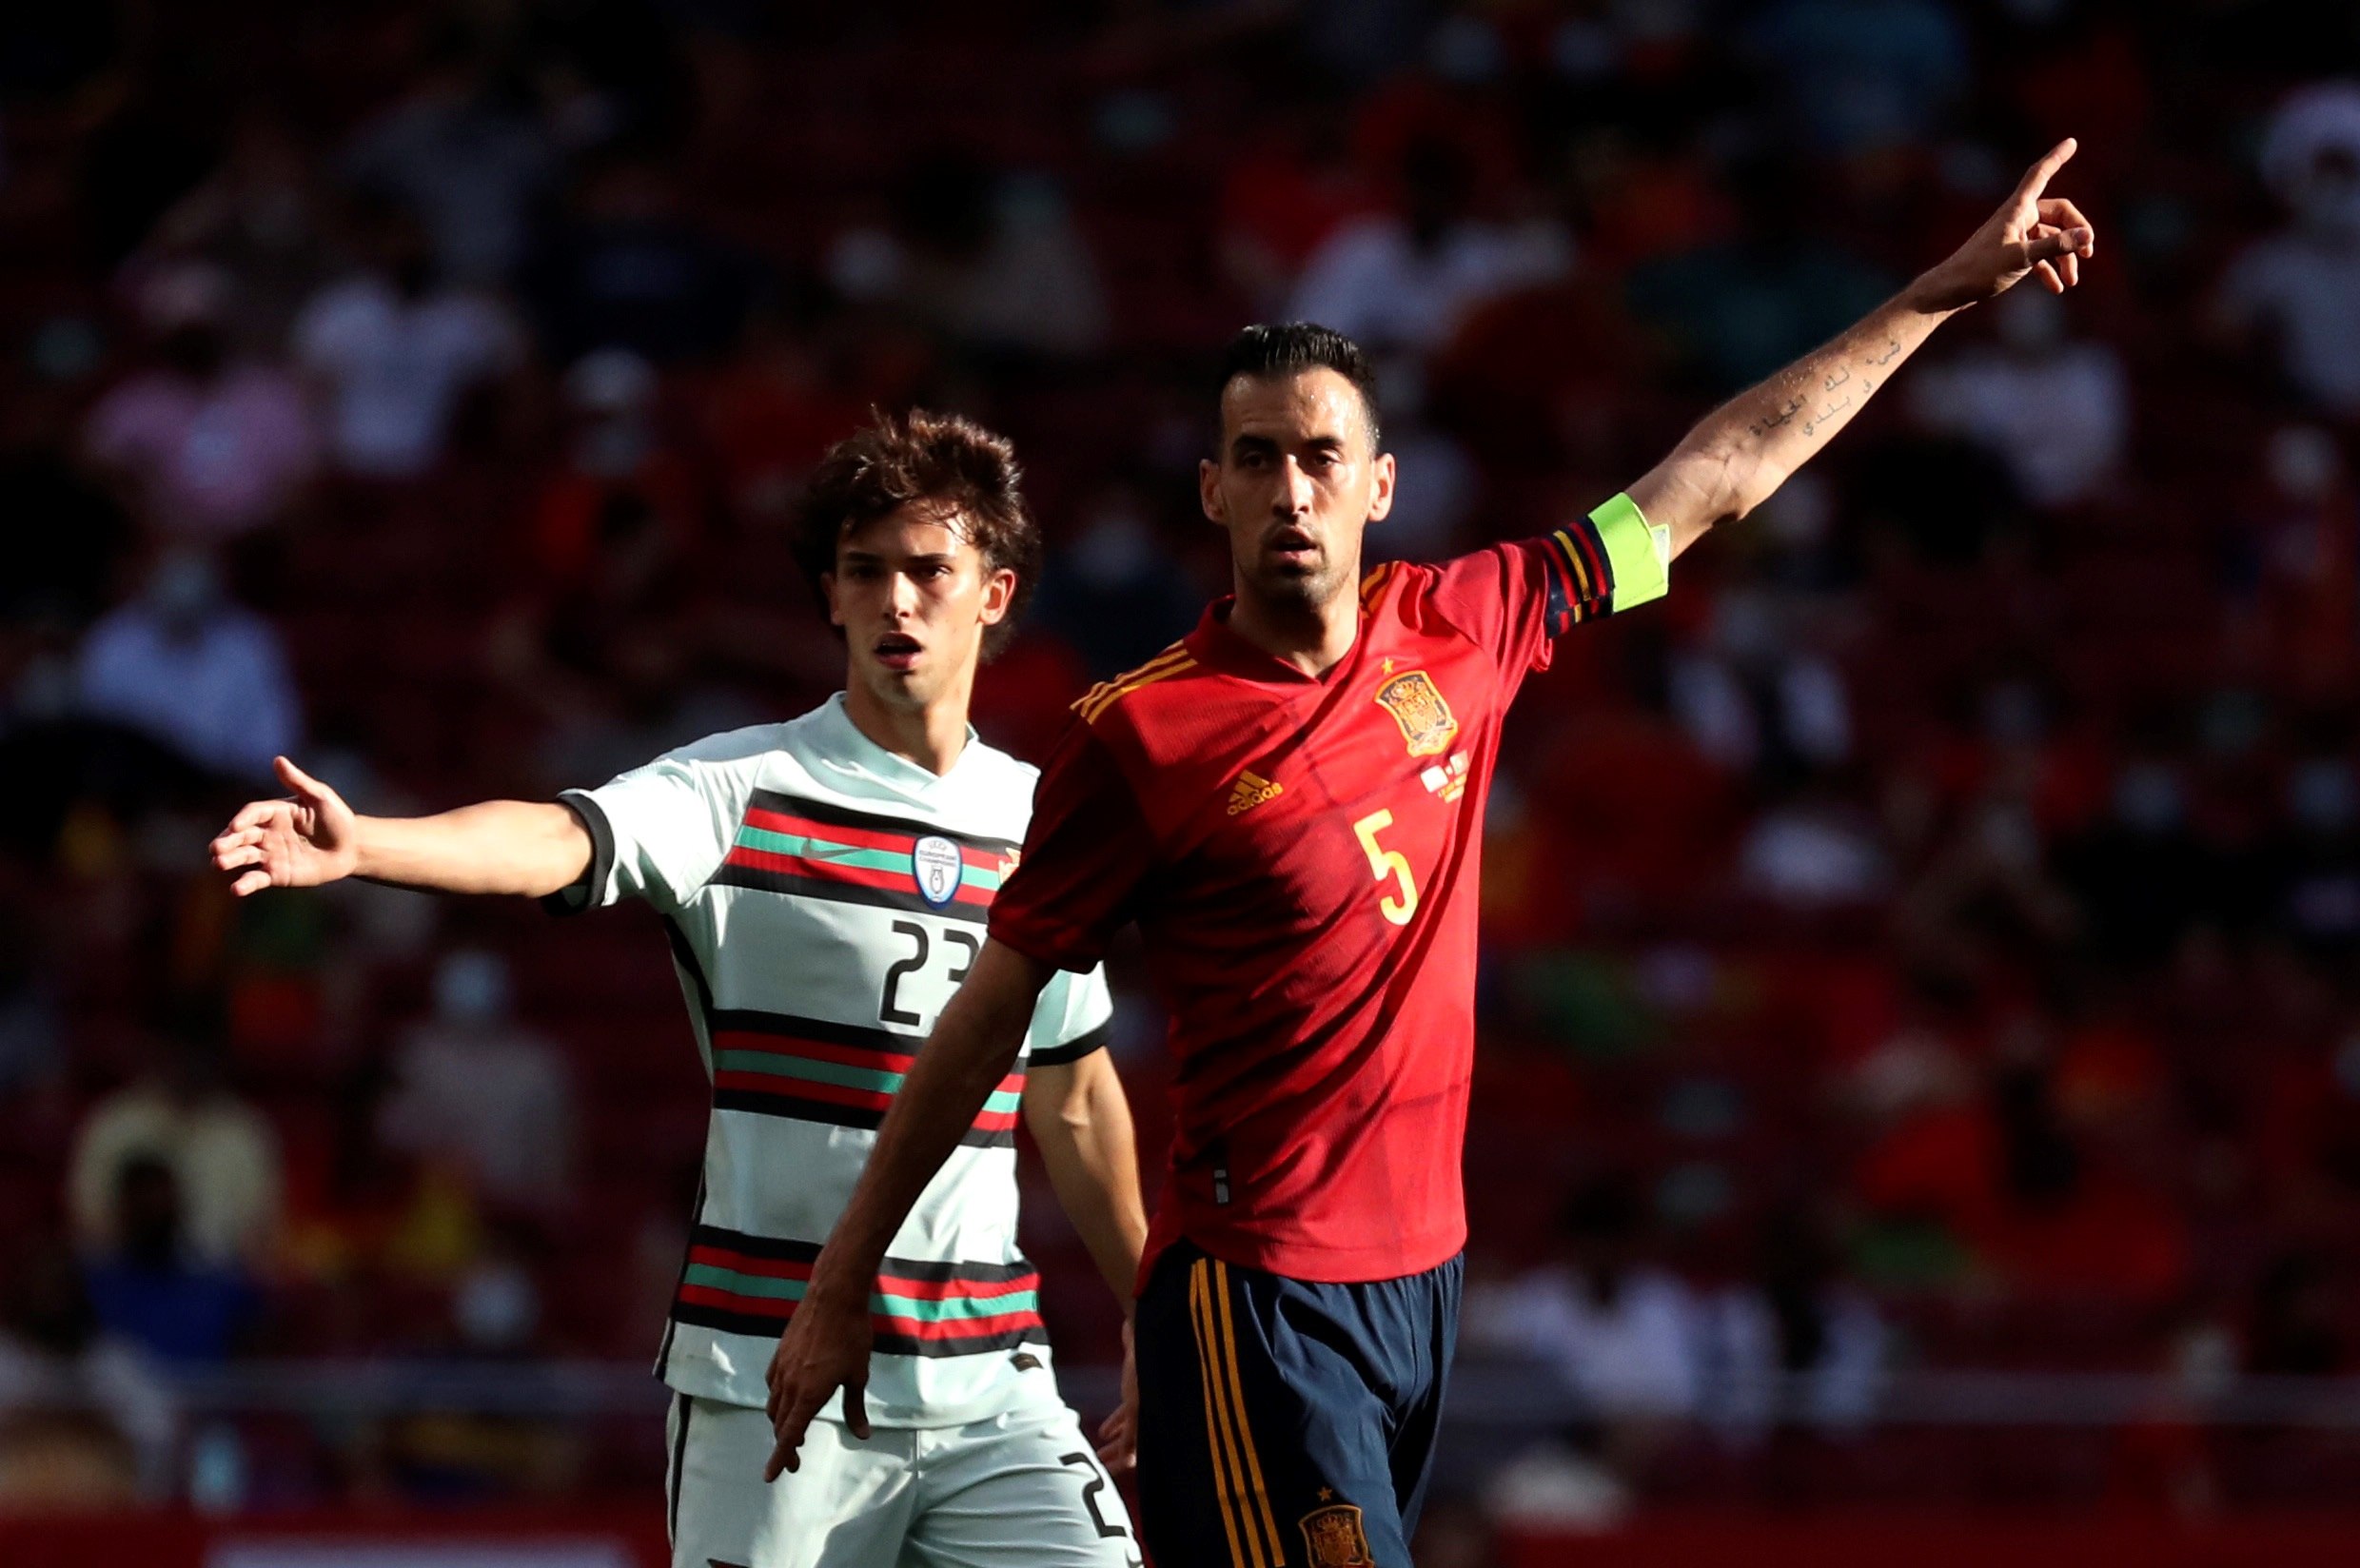 El centrocampista de la selección española Sergio Busquets (d) y Joao Félix, de Portugal, durante el partido amistoso que disputaron el viernes 4 de junio en el estadio Wanda Metropolitano, en Madrid. Foto Prensa Libre: EFE.